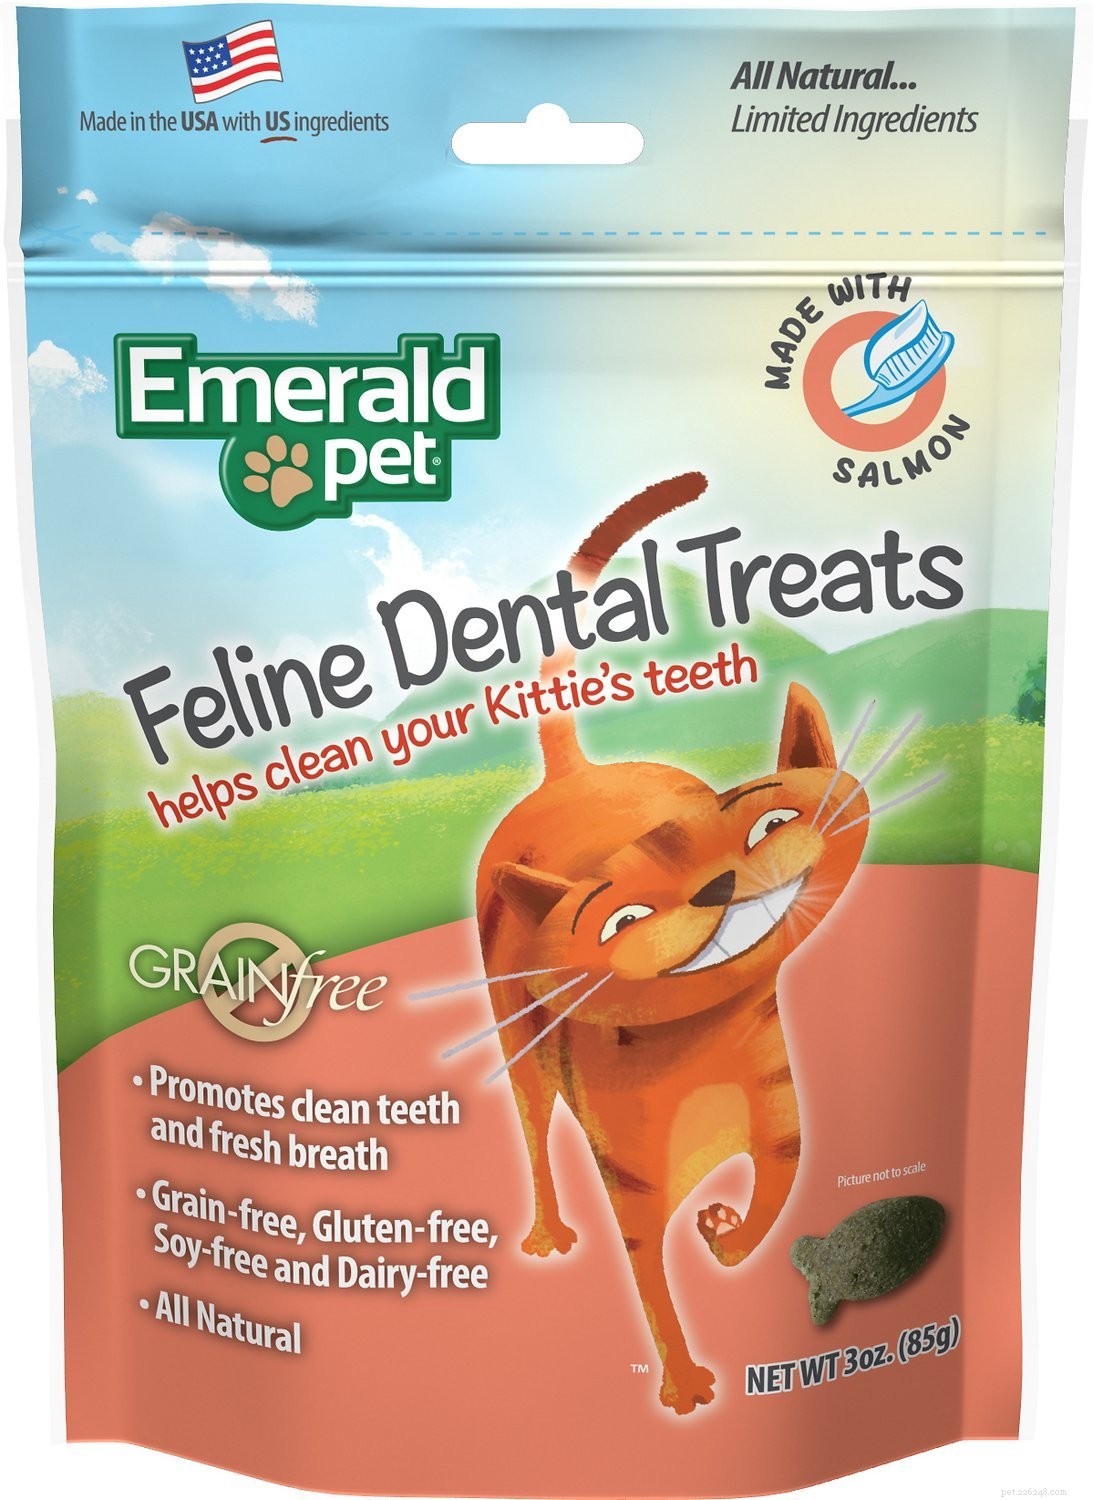 I migliori trattamenti dentali per gatti